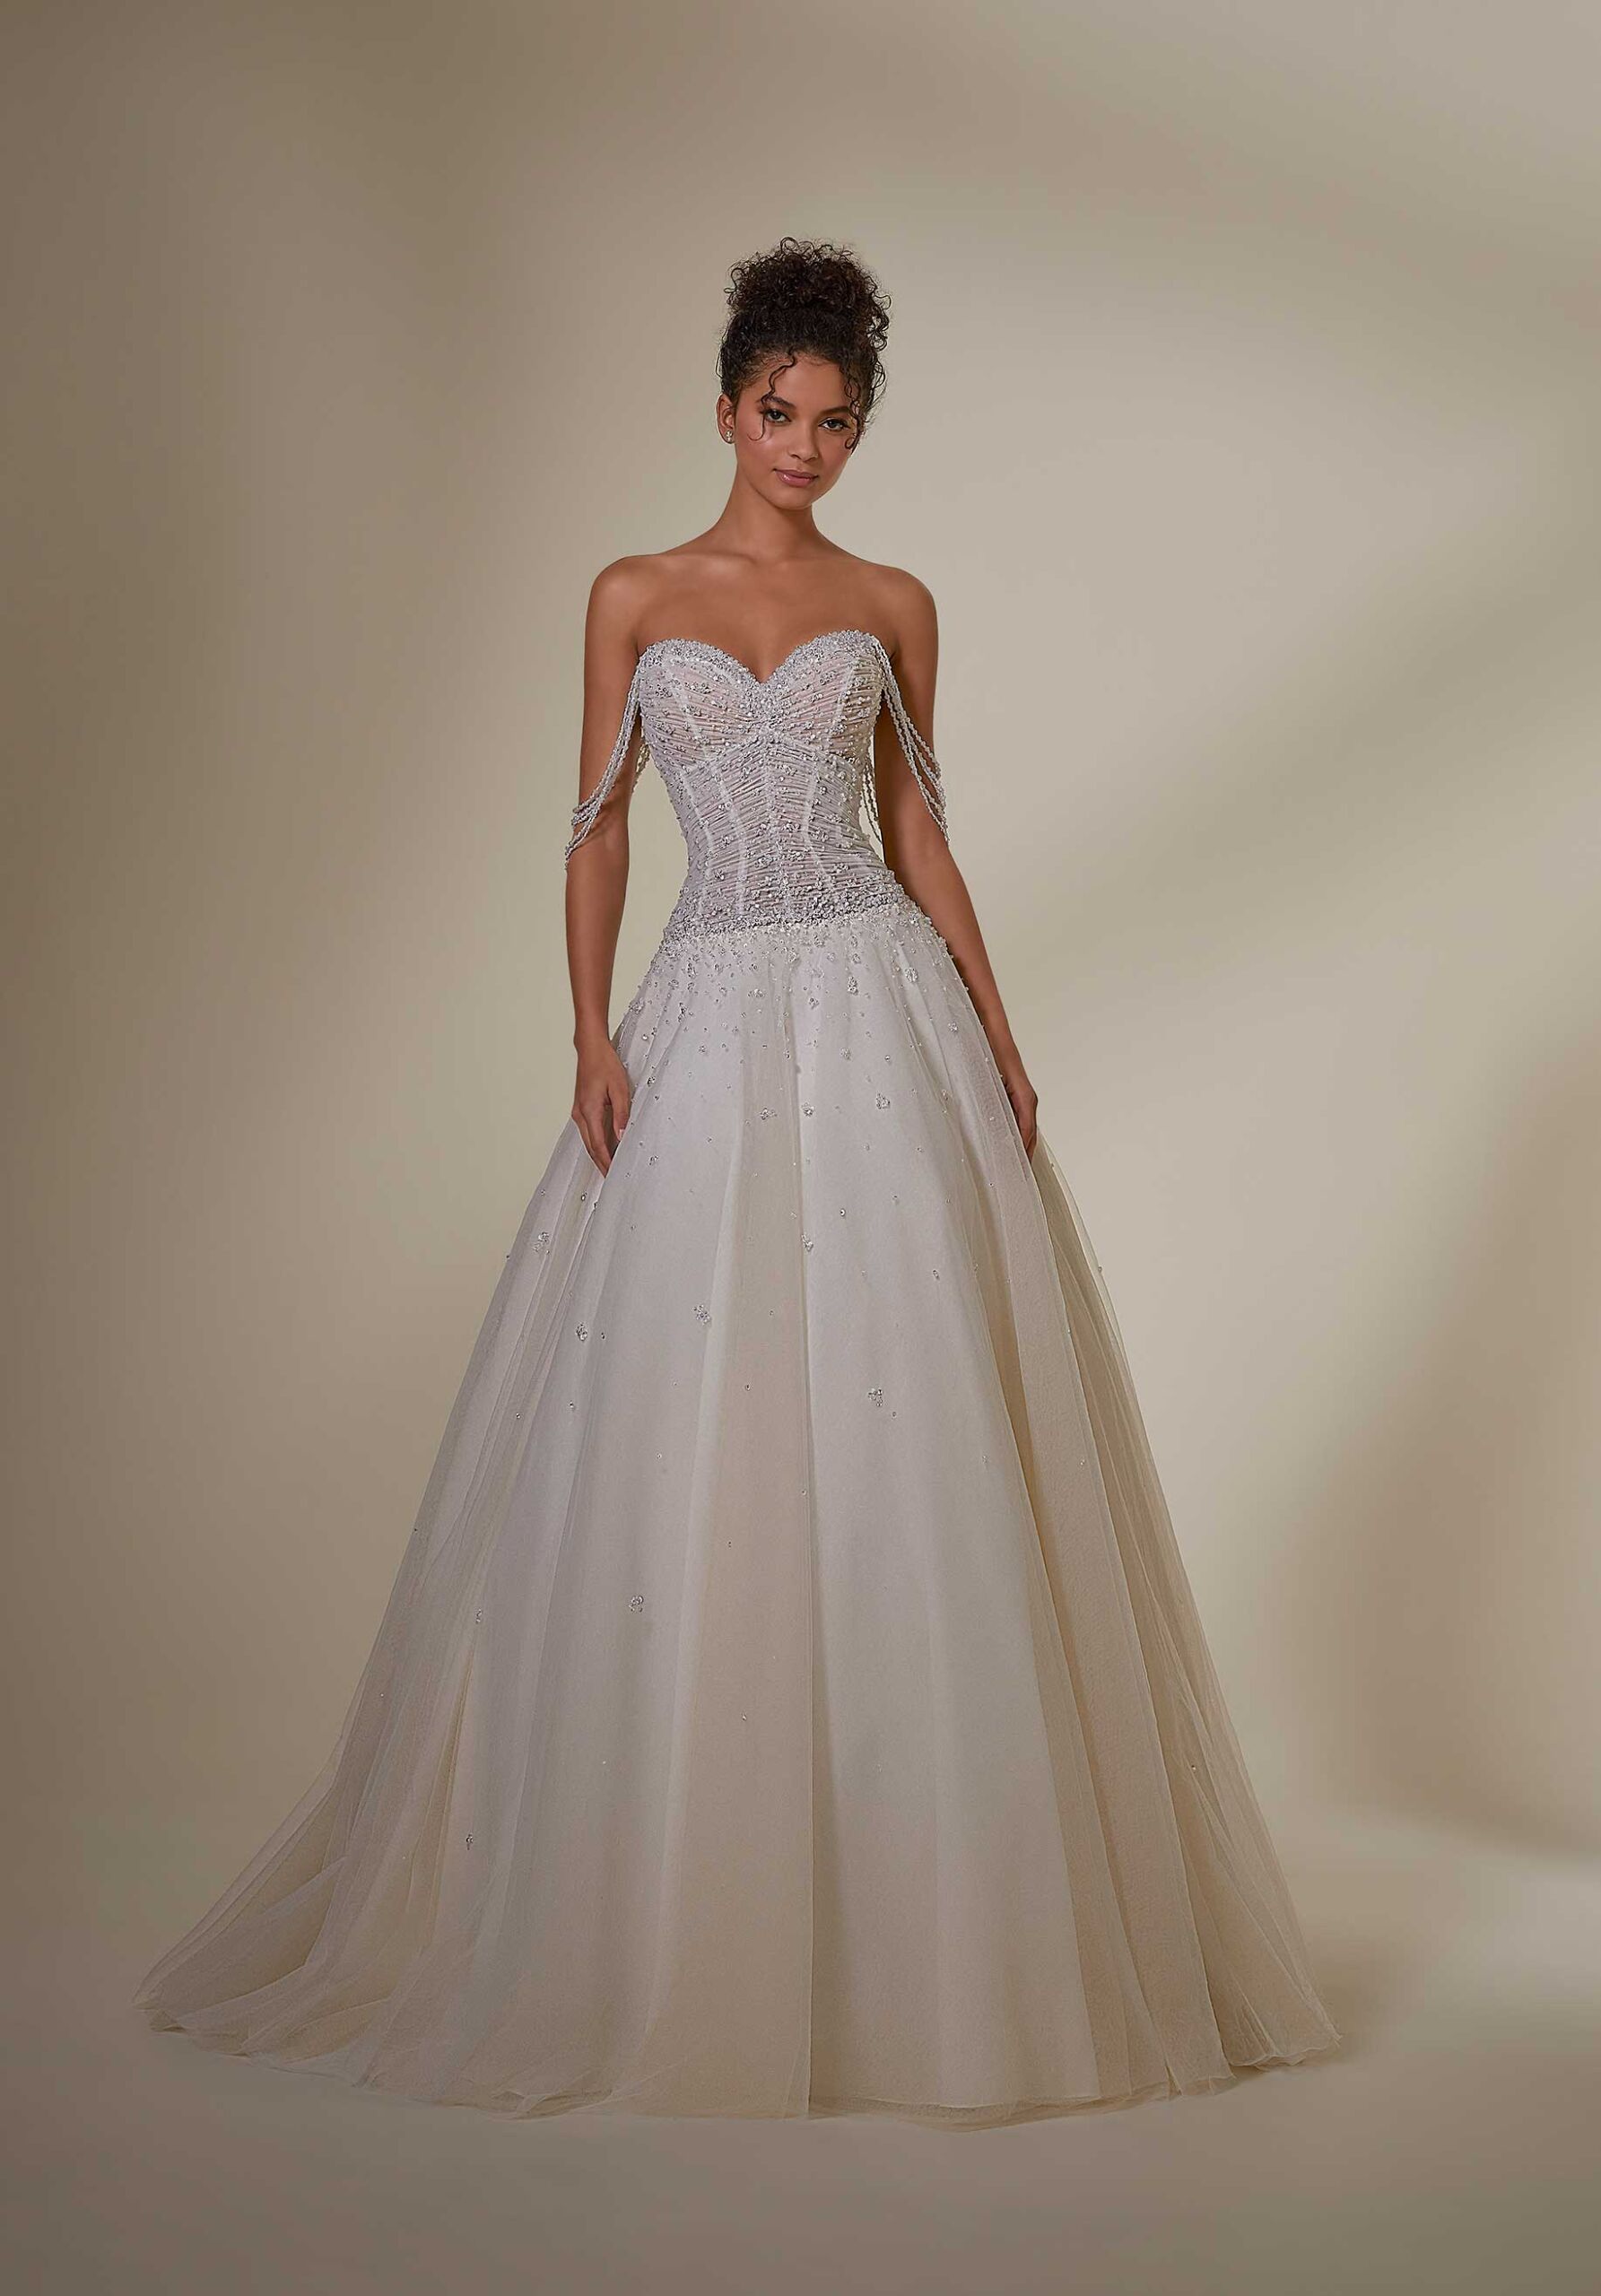 Detachable Tulle Overskirt Elastic Waist Bride Overlay Wedding Skirt Black  White | eBay